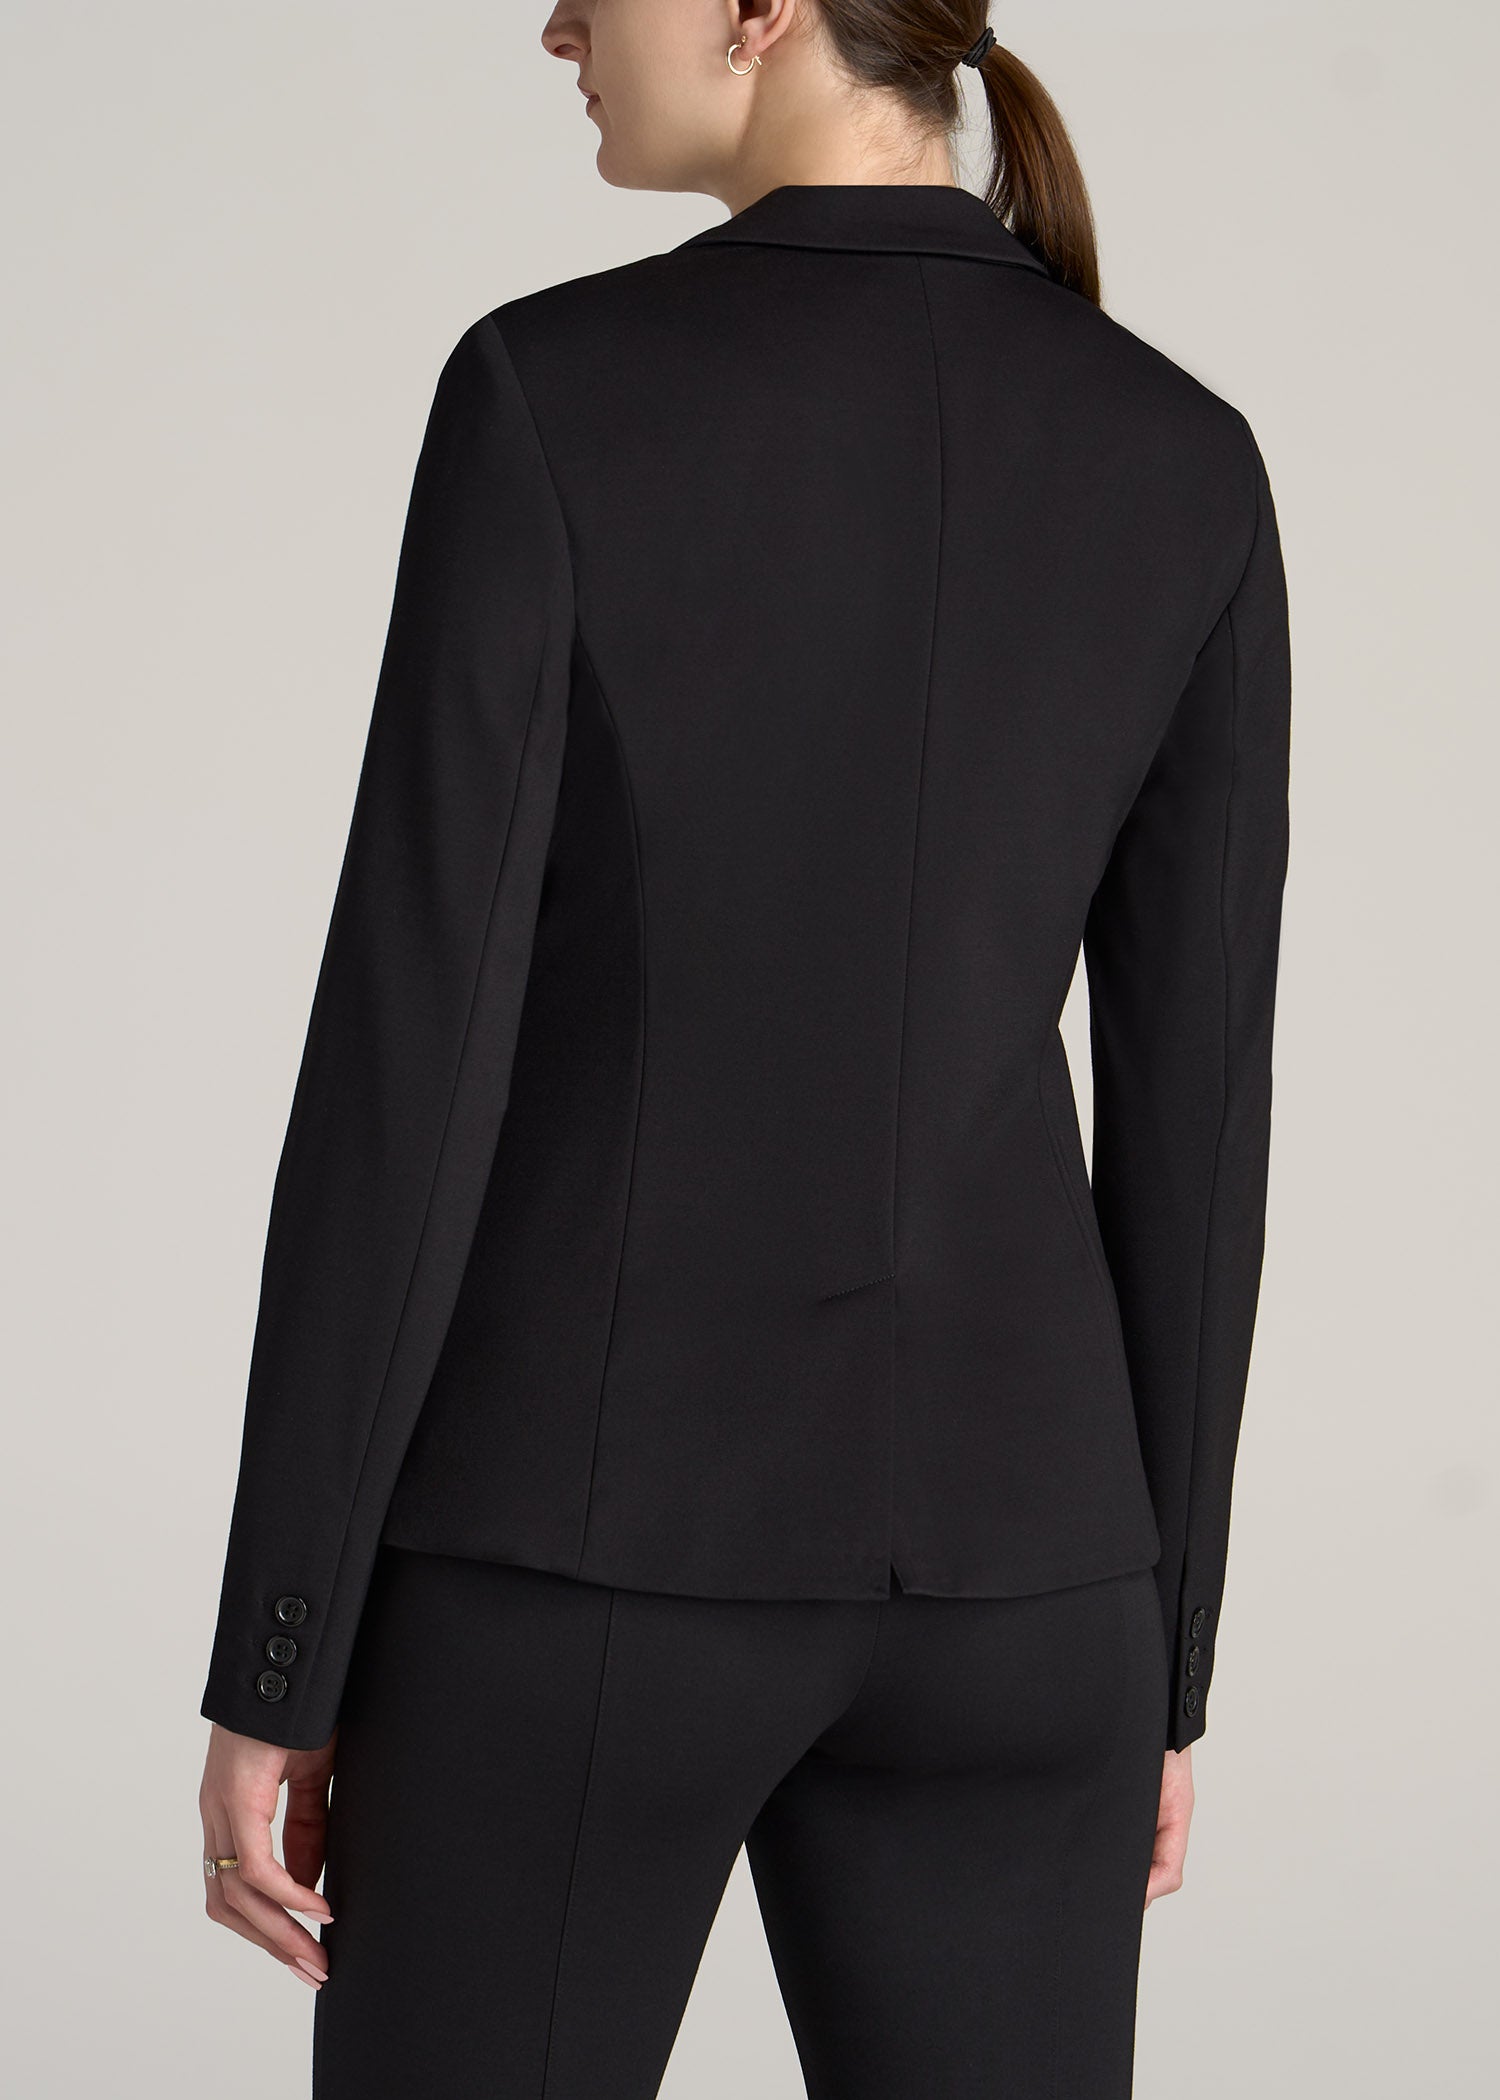 https://americantall.com/cdn/shop/products/American-Tall-Women-Two-Button-Blazer-Black-back_1946x.jpg?v=1676390930